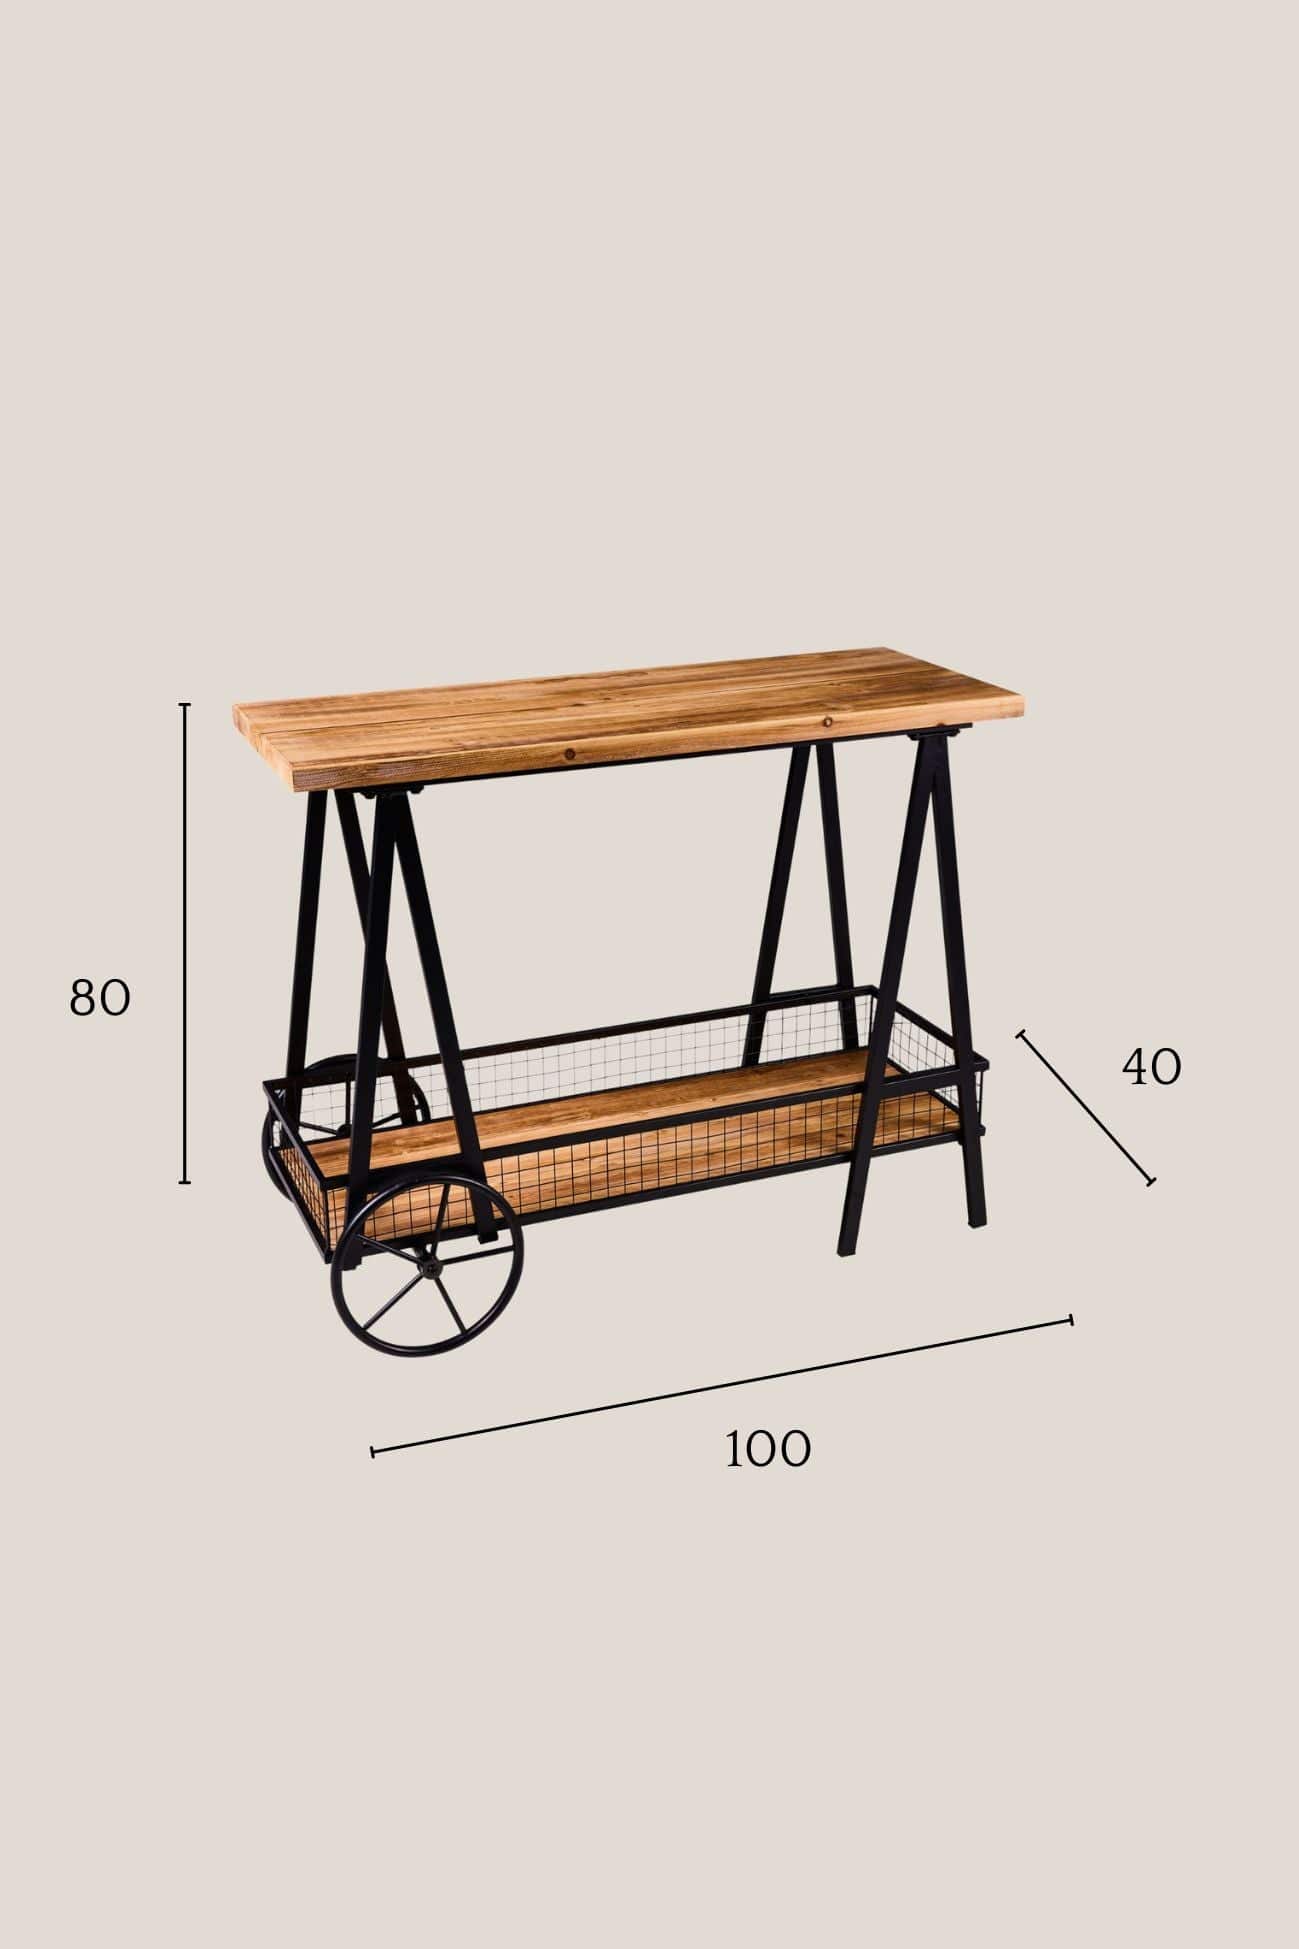 Novità Home Innovation Innovation - Tavolino in legno di abete con ruote e doppio ripiano | Novità Home